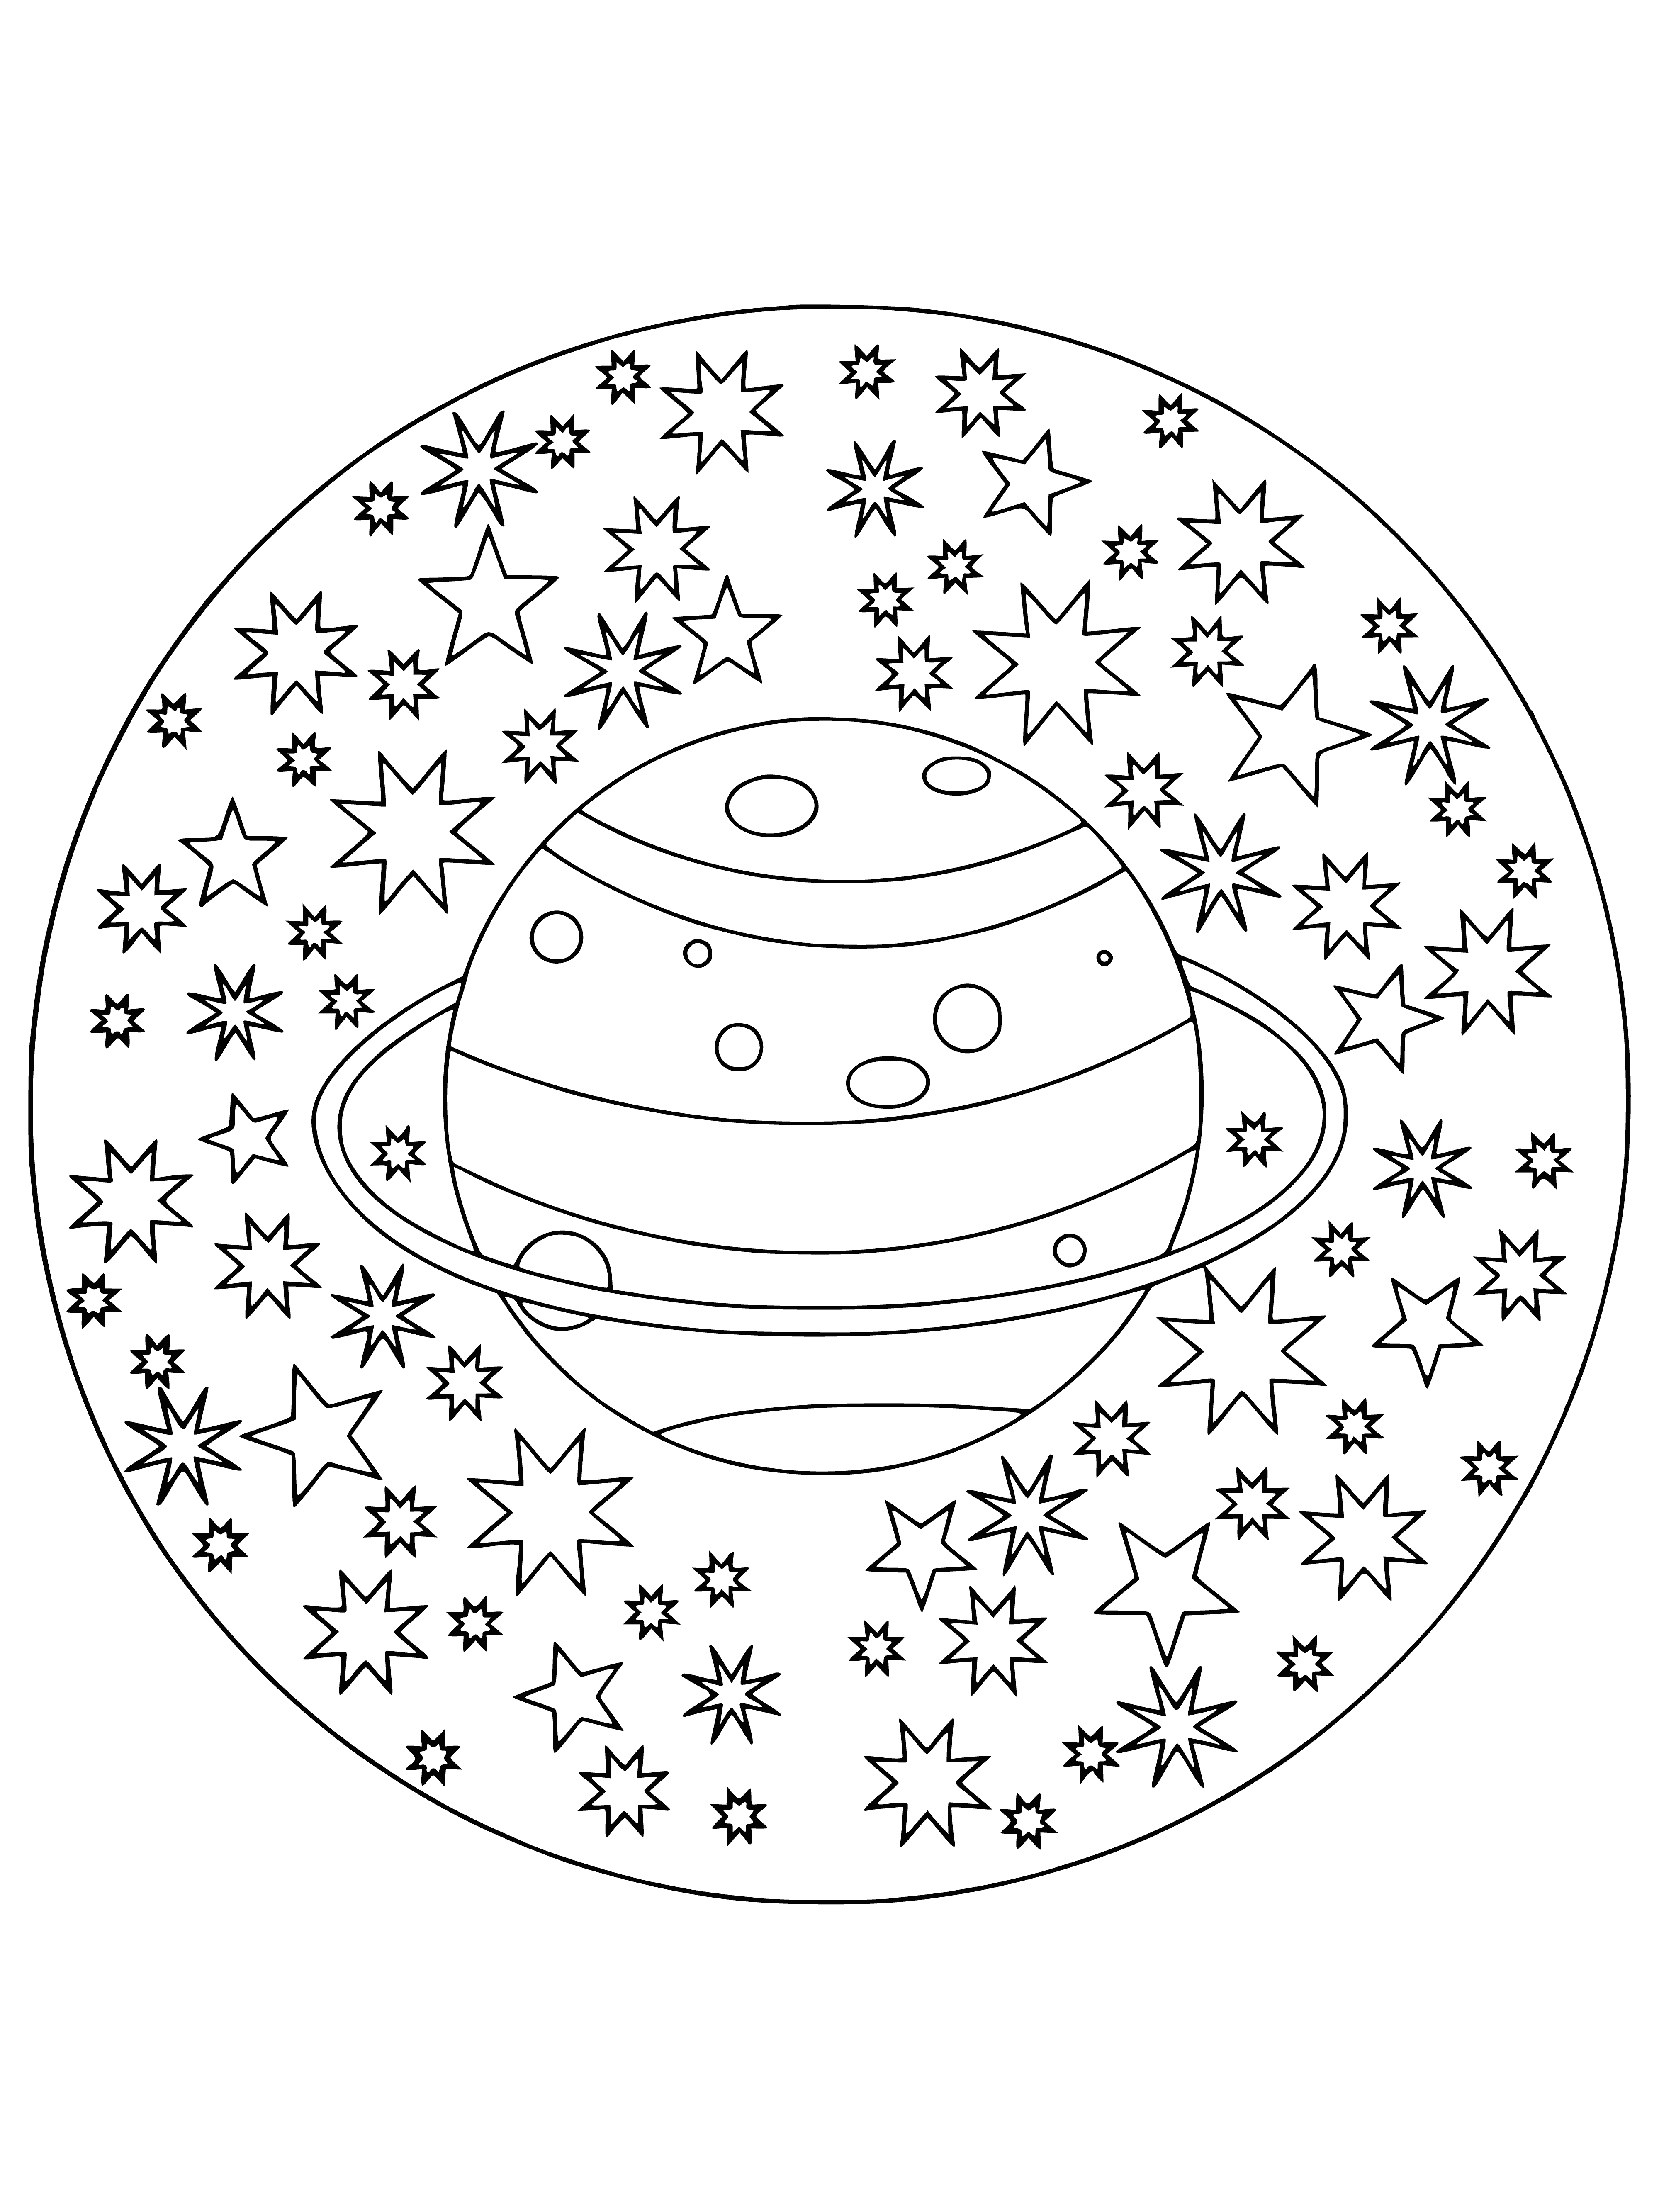 Saturn kolorowanka